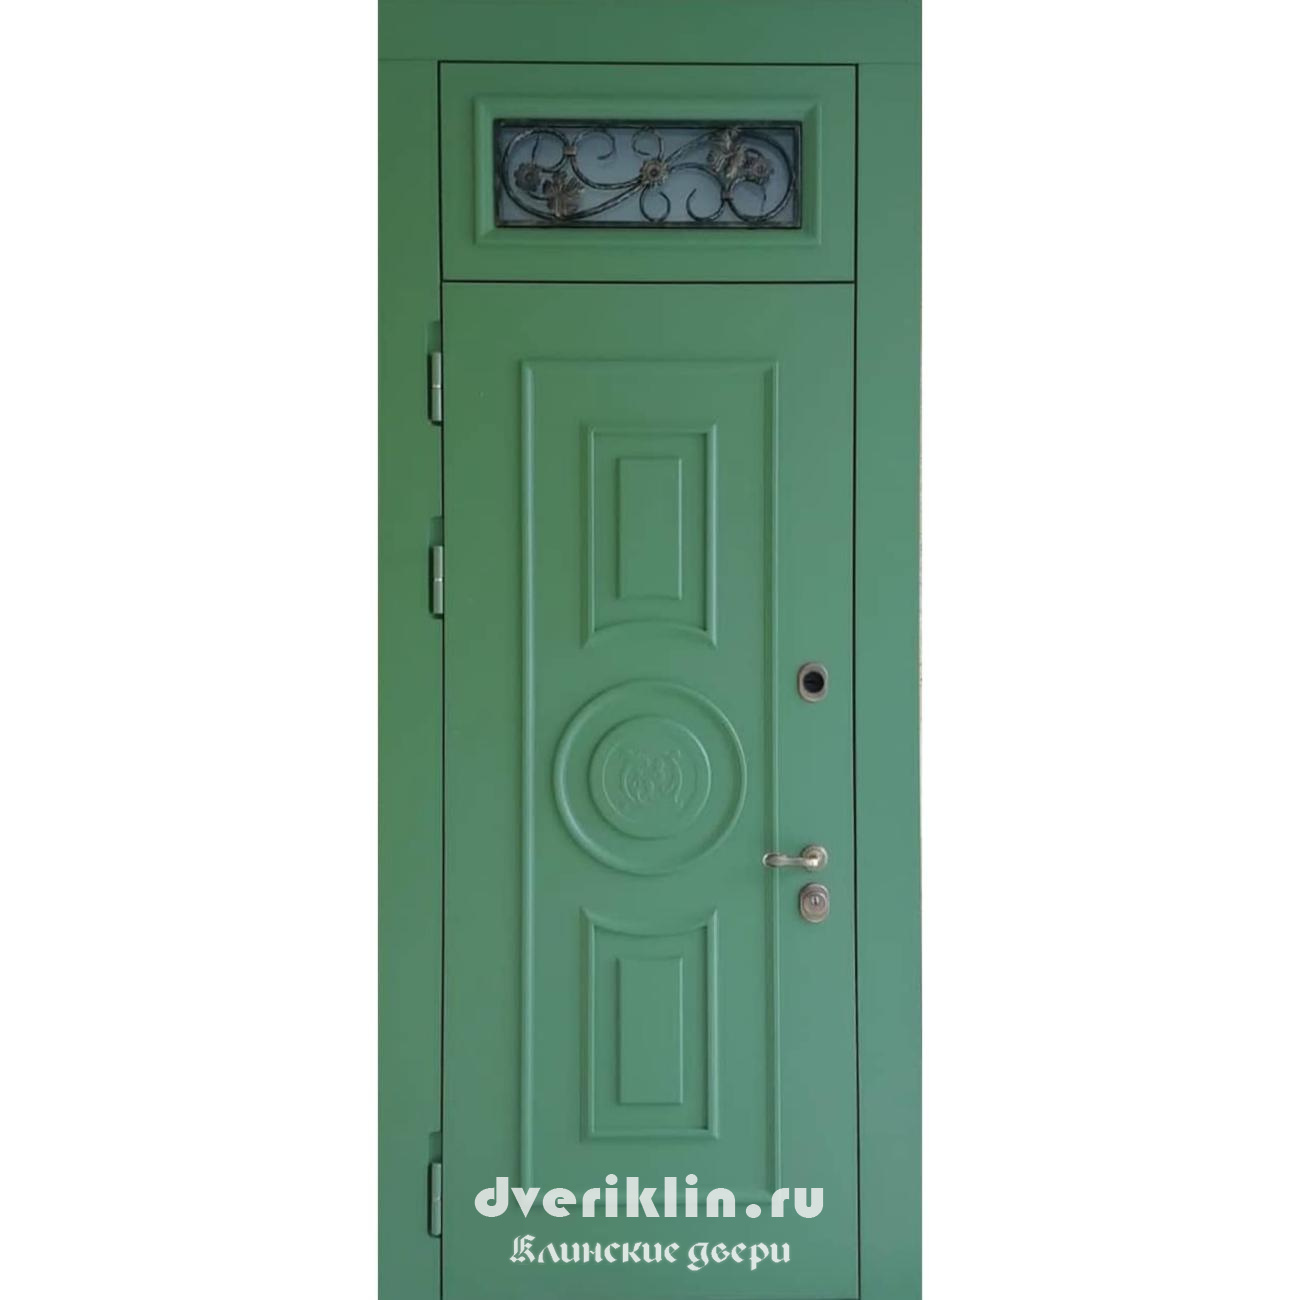 Дверь с верхней фрамугой DFR-03 (С фрамугой)